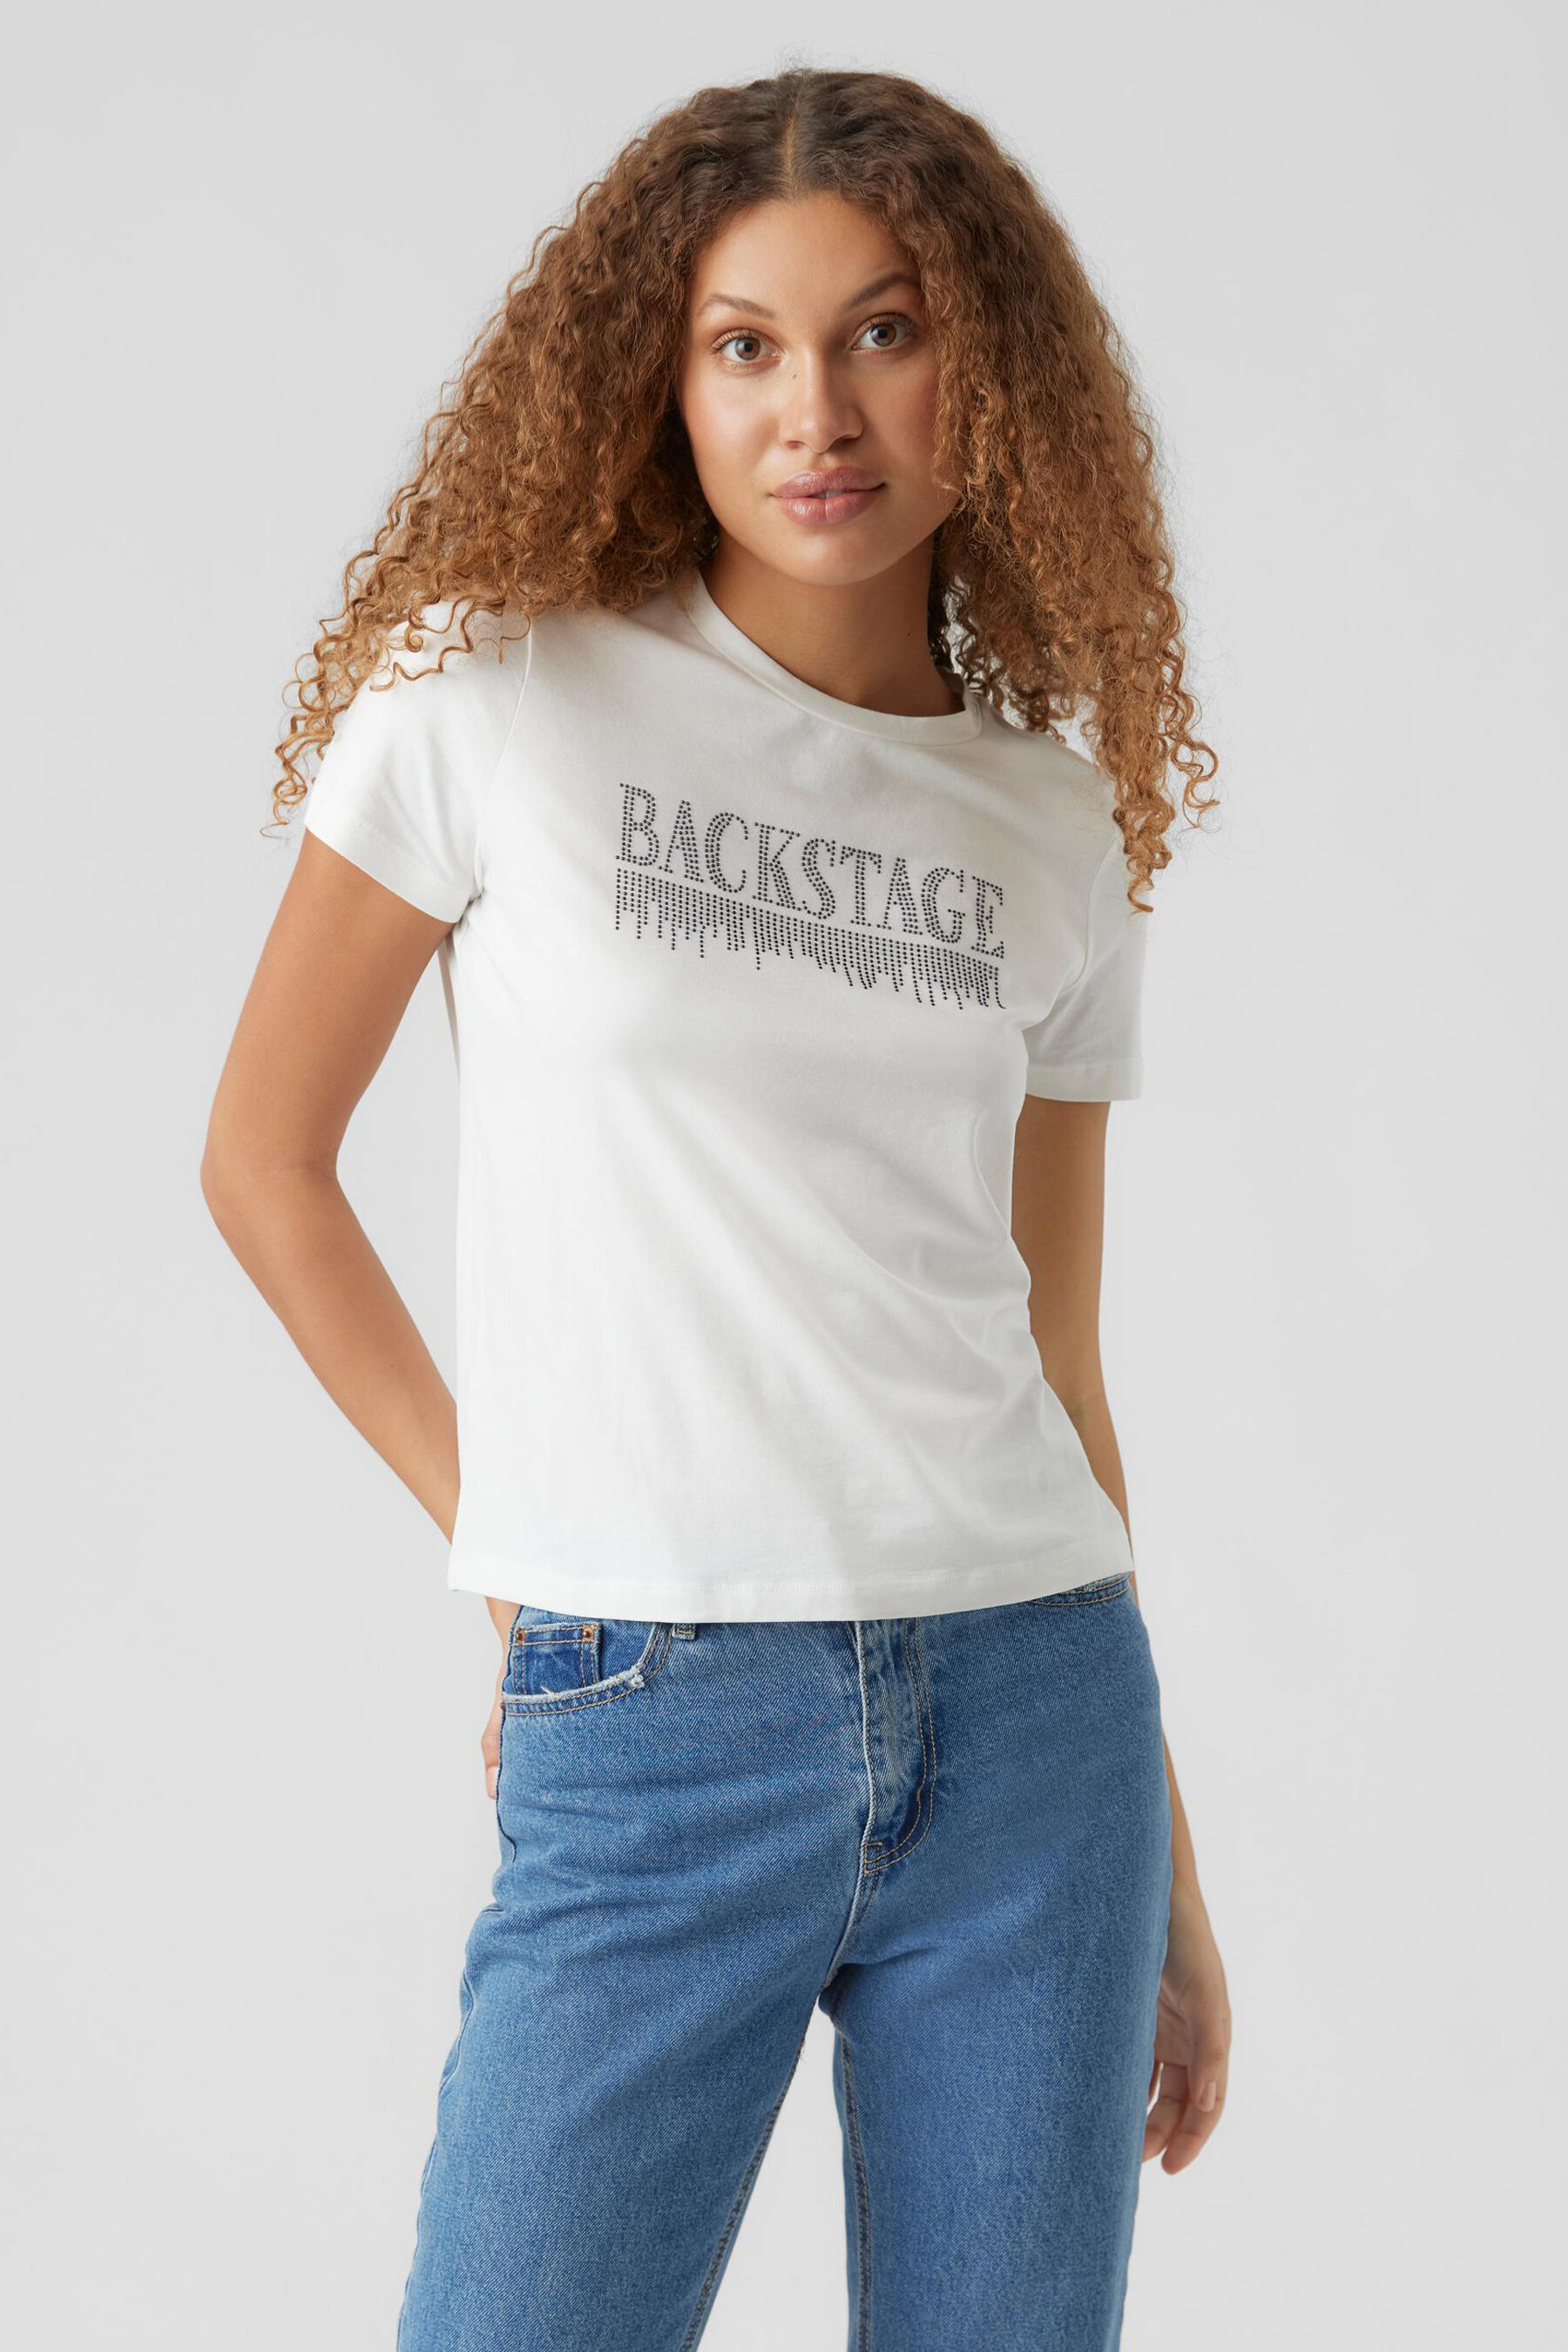 Le Temps van Cerises T-shirt voor meisjes Amazon Meisjes Kleding Tops & Shirts Tops Lange Mouwen Tops 10 ans 